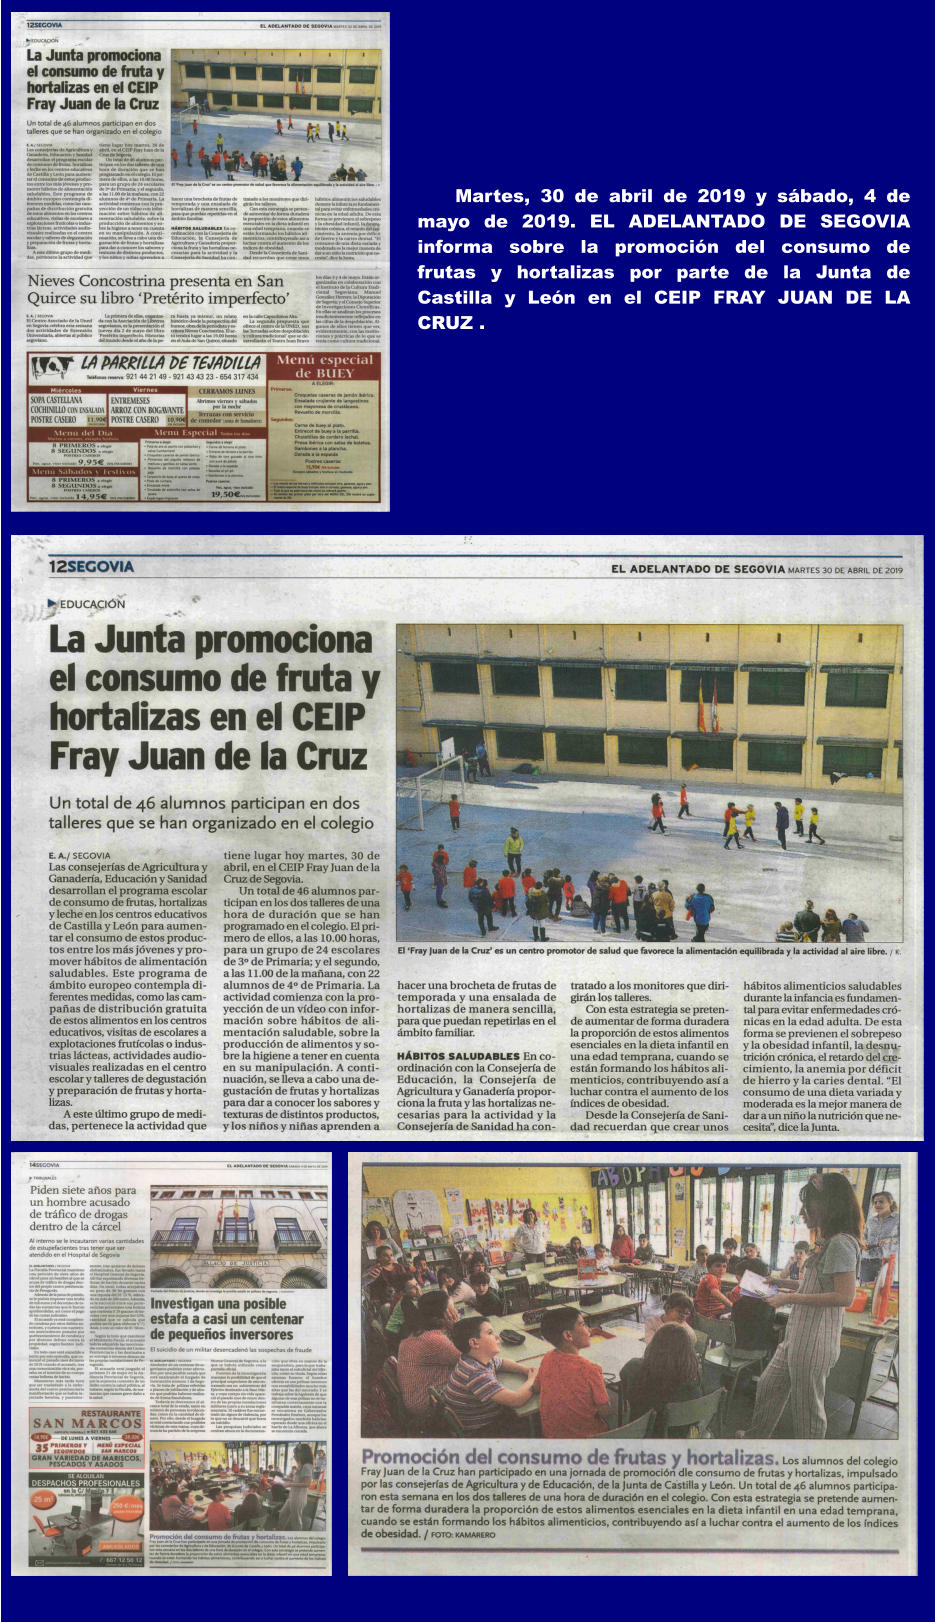 Martes, 30 de abril de 2019 y sábado, 4 de mayo de 2019. EL ADELANTADO DE SEGOVIA informa sobre la promoción del consumo de frutas y hortalizas por parte de la Junta de Castilla y León en el CEIP FRAY JUAN DE LA CRUZ .